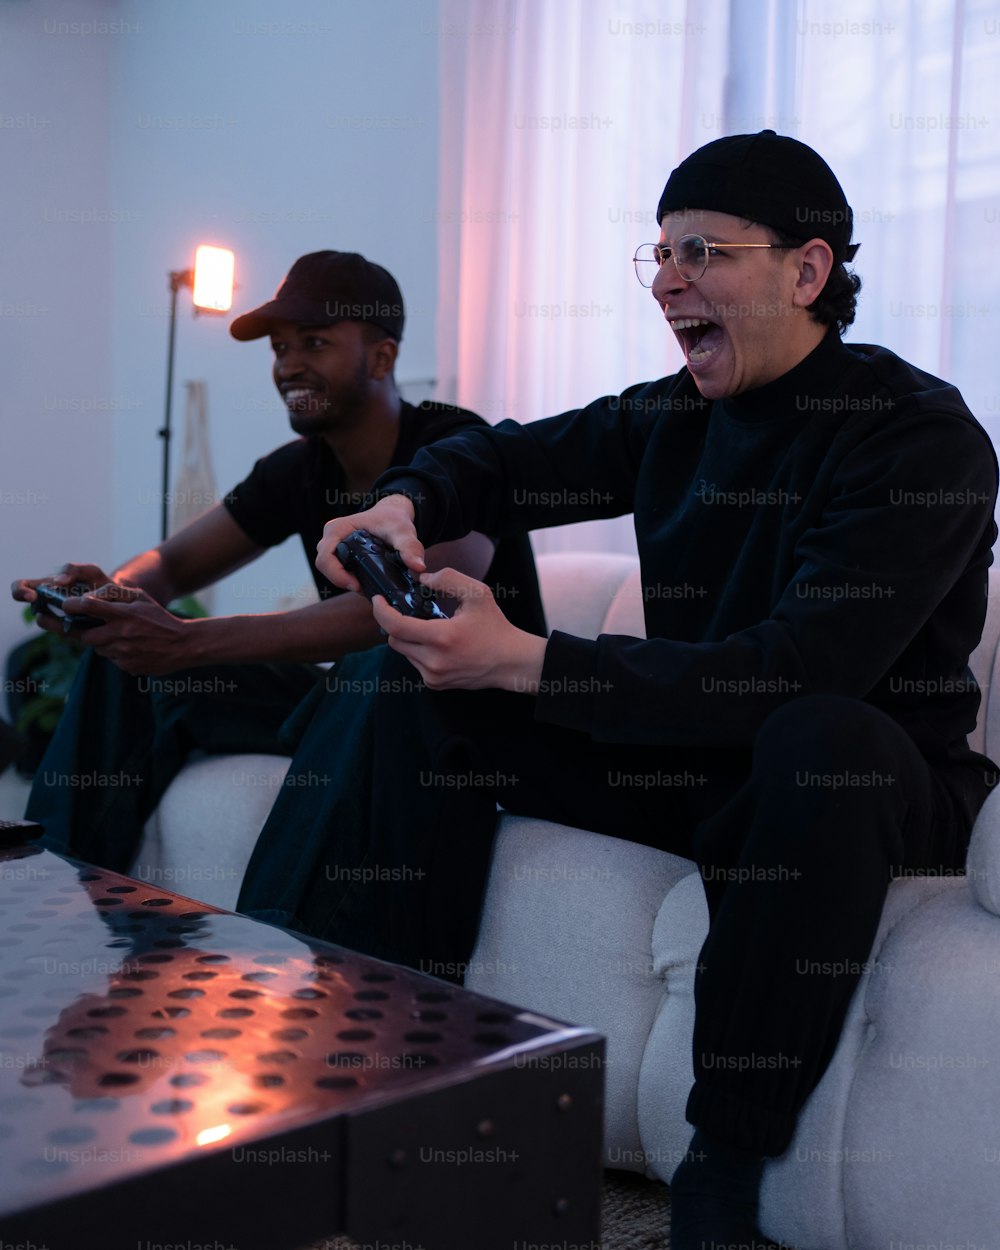 Zwei Personen, die auf einer Couch sitzen und ein Videospiel spielen